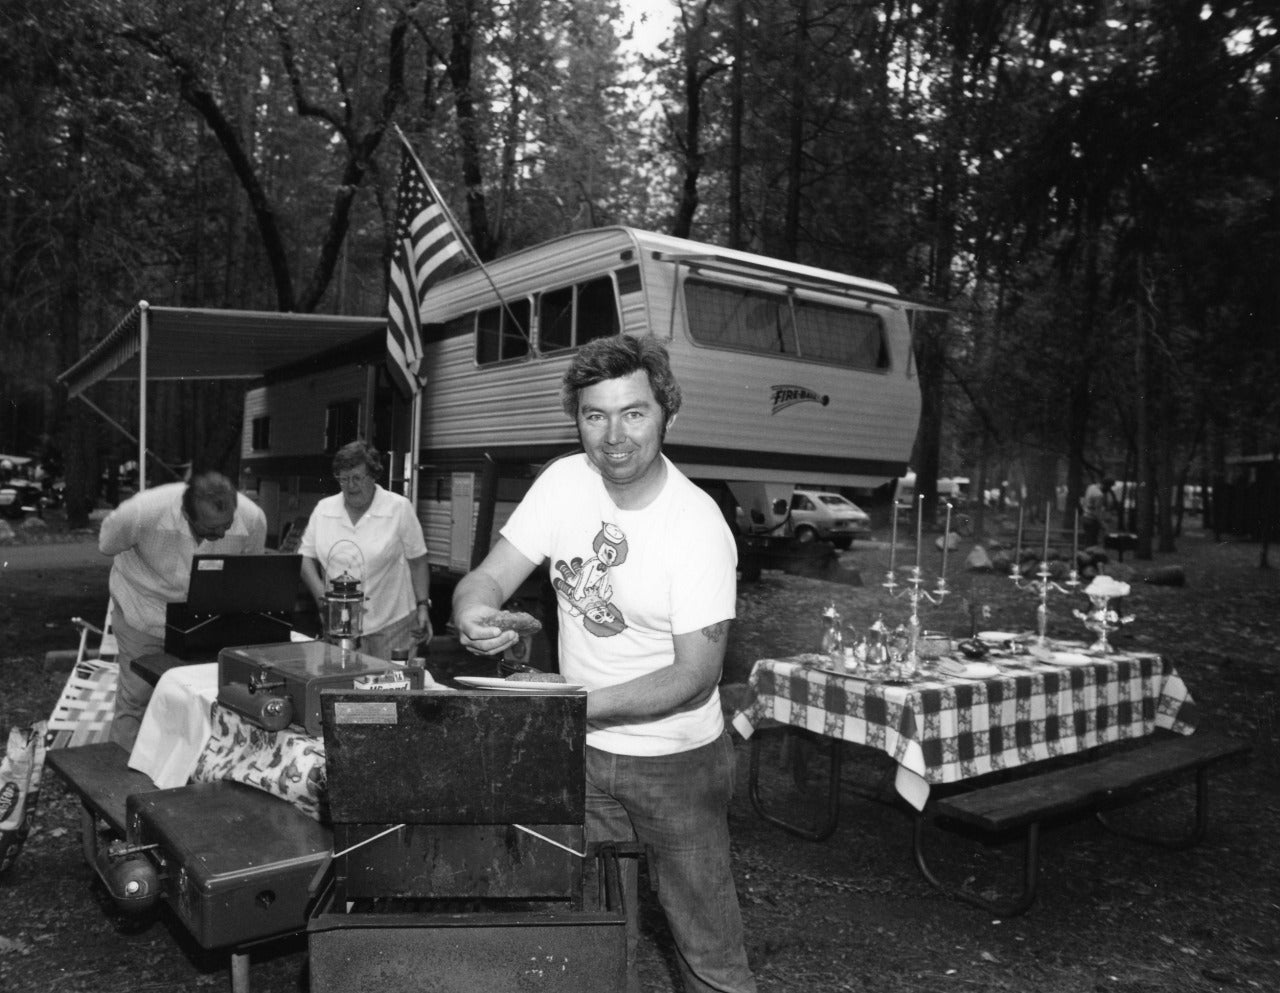 Bill Owens Portrait Photograph – Jeder Sommer verbringt wir in unserem Lager in Yosemite, von Leisure